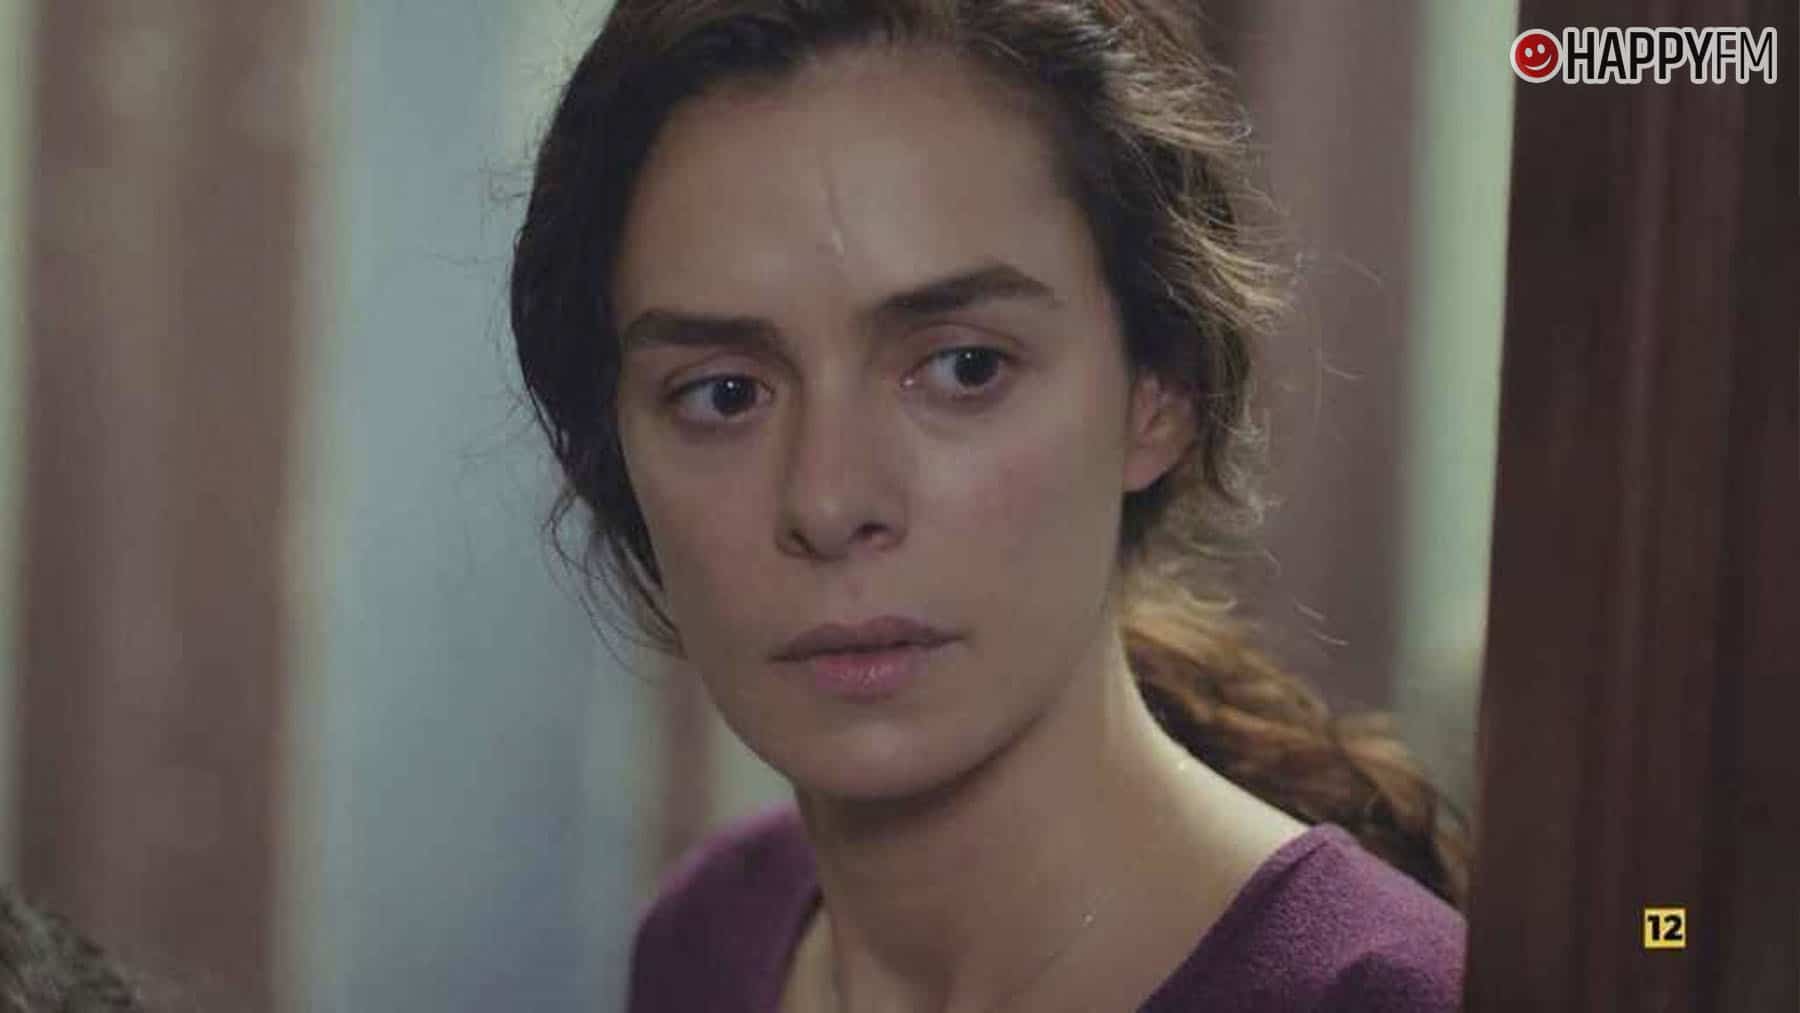 Özge Özpirinçci: ¿por qué la actriz de ‘Mujer’ conserva la sangre del cordón umbilical de su hija?